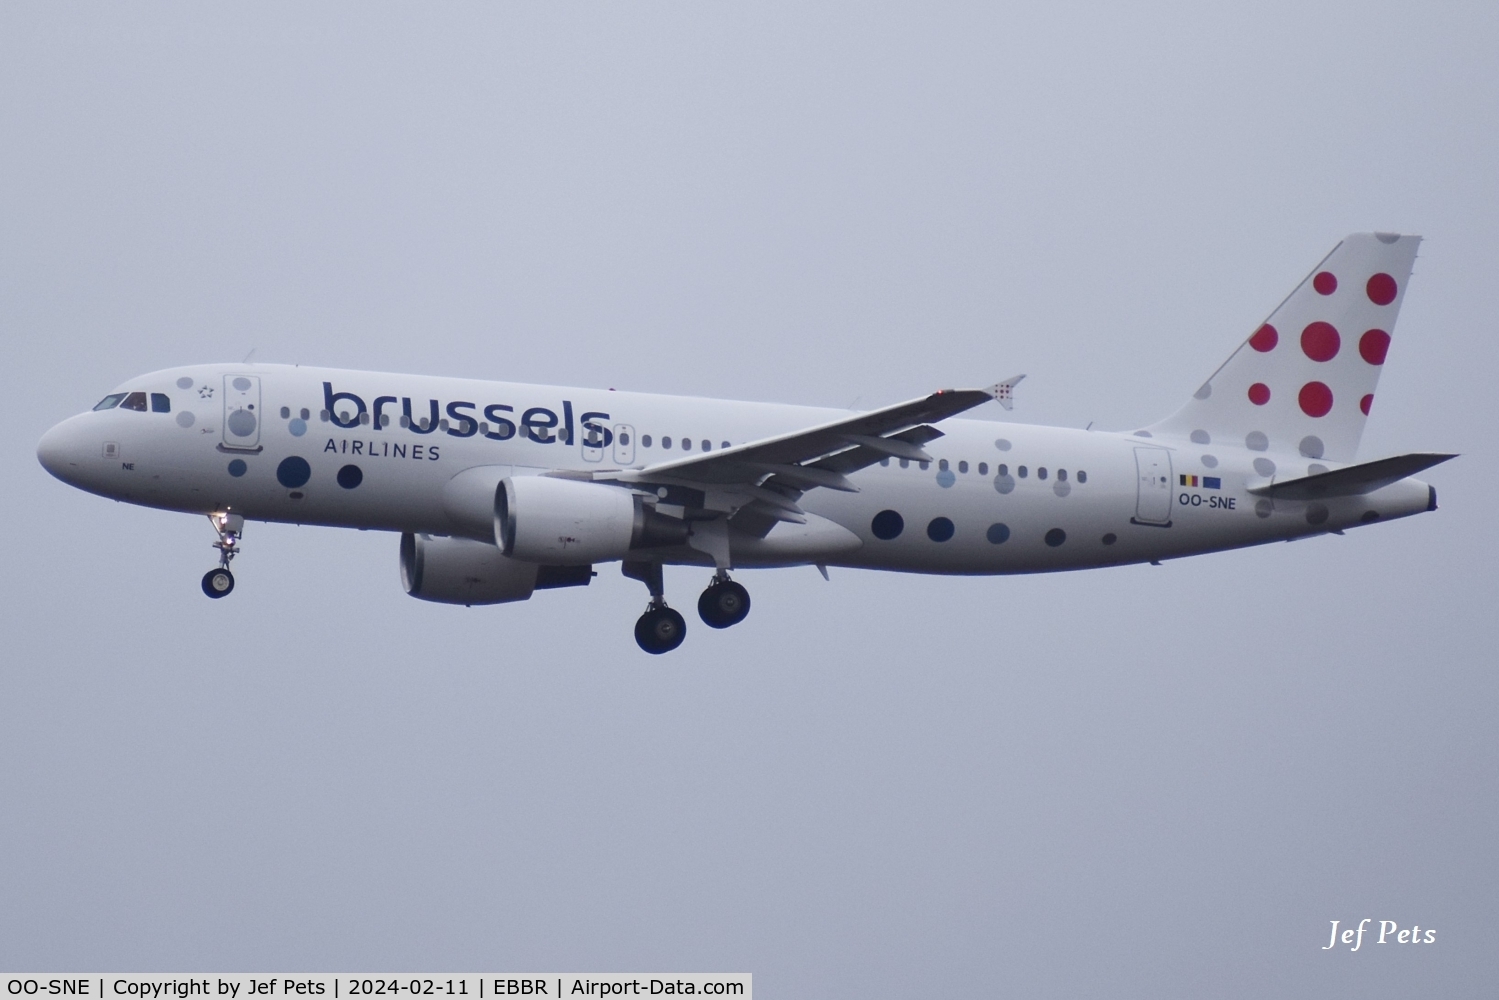 OO-SNE, 2010 Airbus A320-214 C/N 4243, Landing at Brussels Airport.